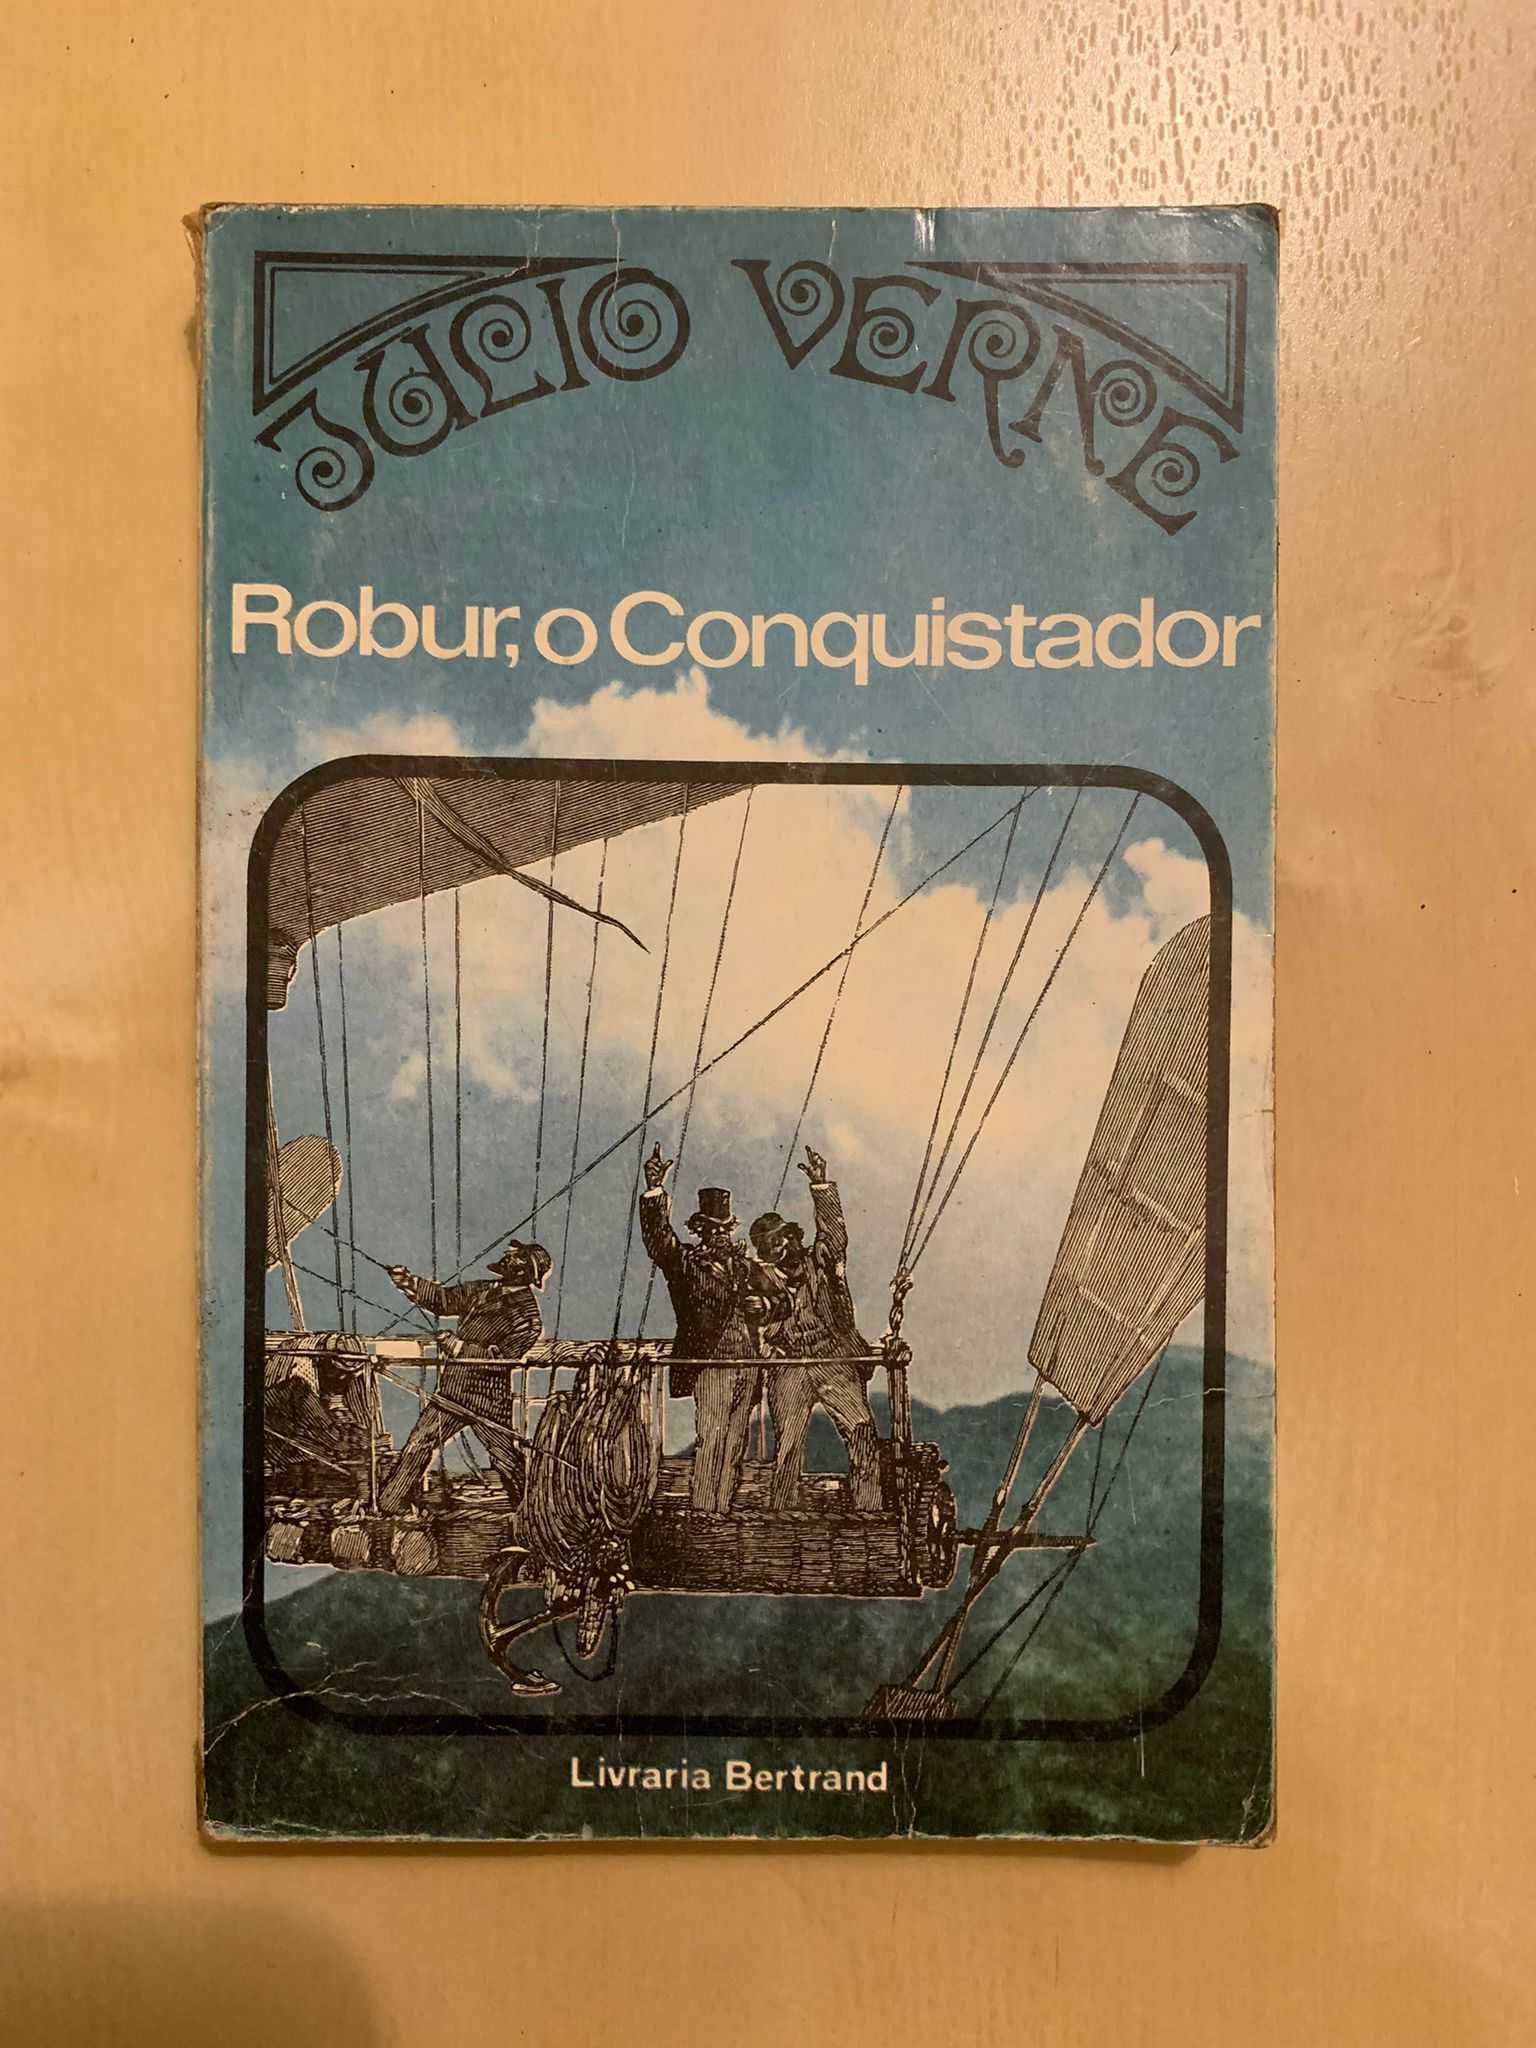 Robur, O Conquistador - Julio Verne